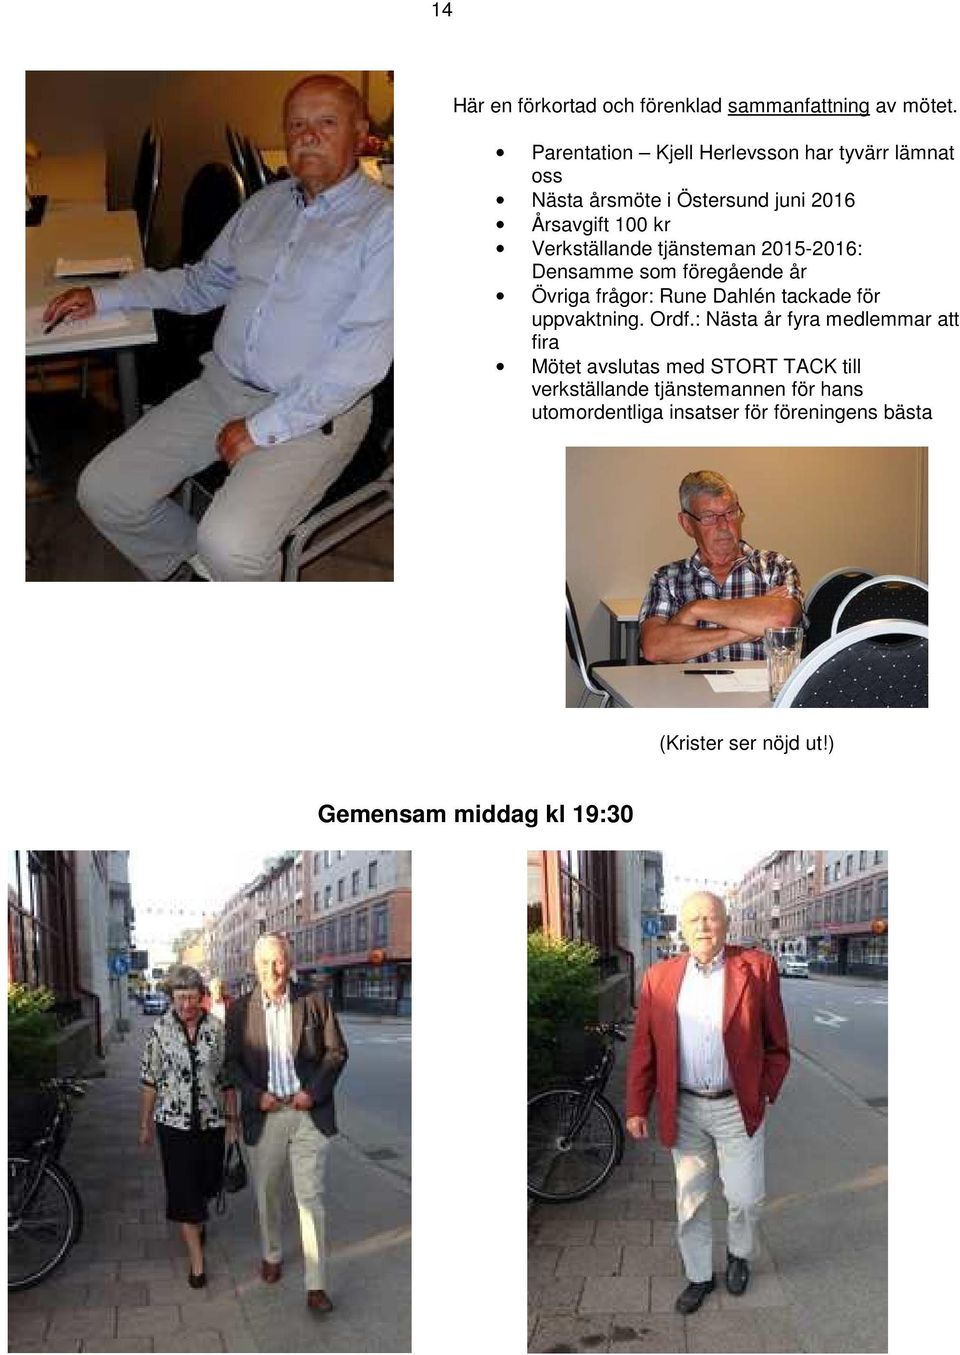 tjänsteman 2015-2016: Densamme som föregående år Övriga frågor: Rune Dahlén tackade för uppvaktning. Ordf.